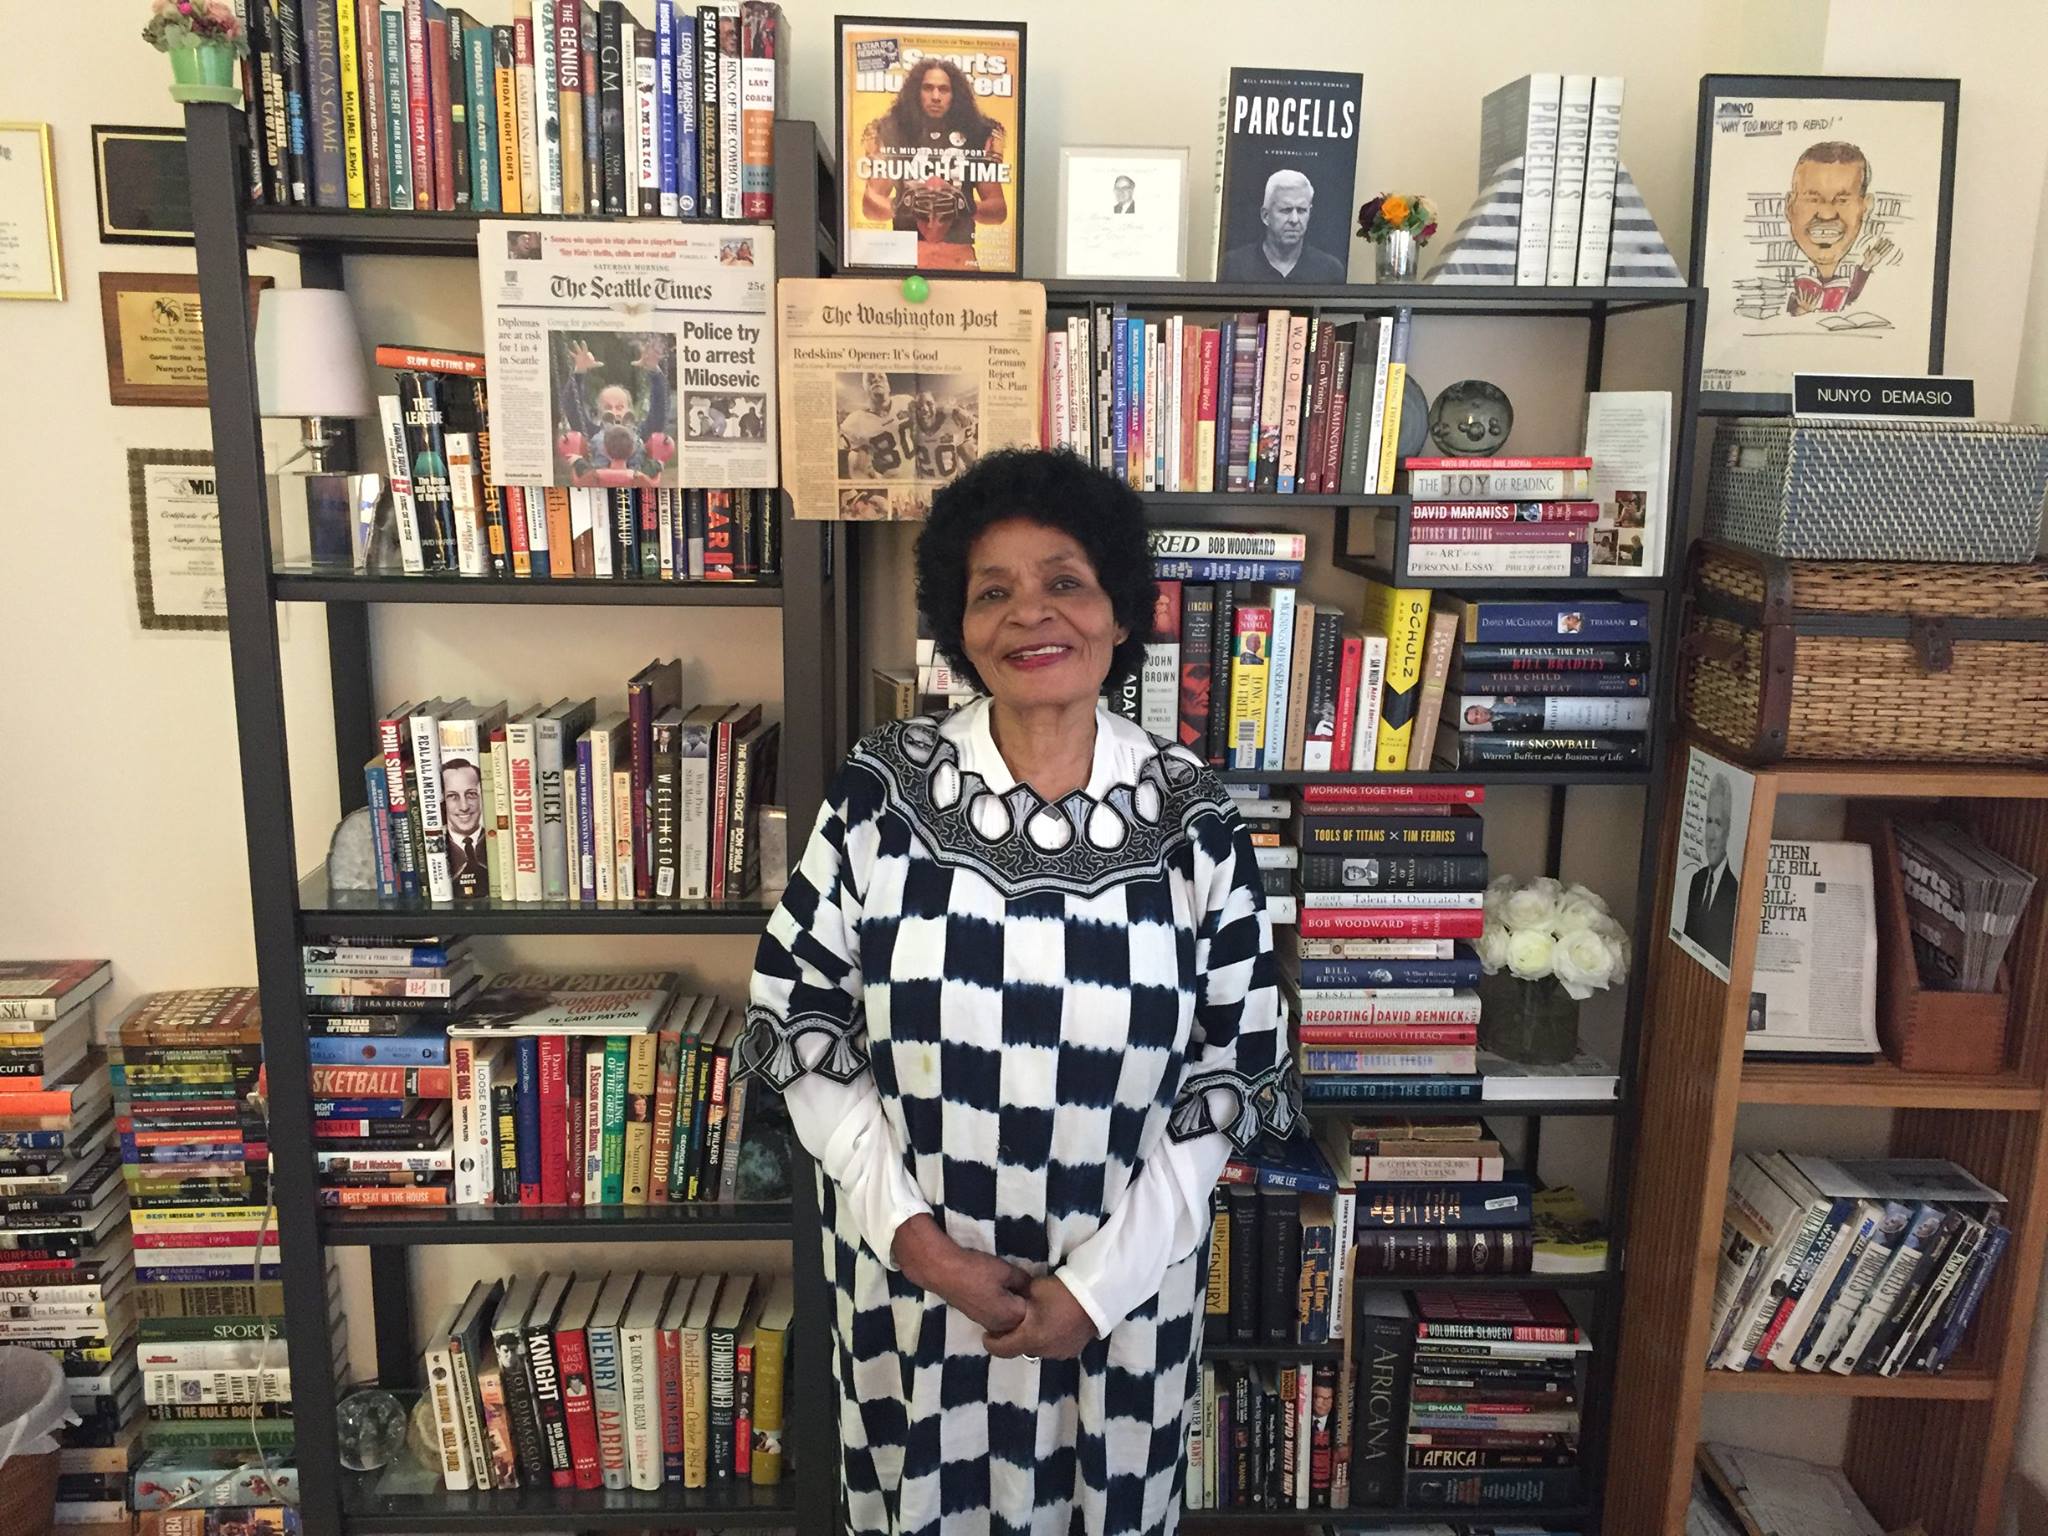   Queen Dorcas in front of my book shelf during summer 2017.  